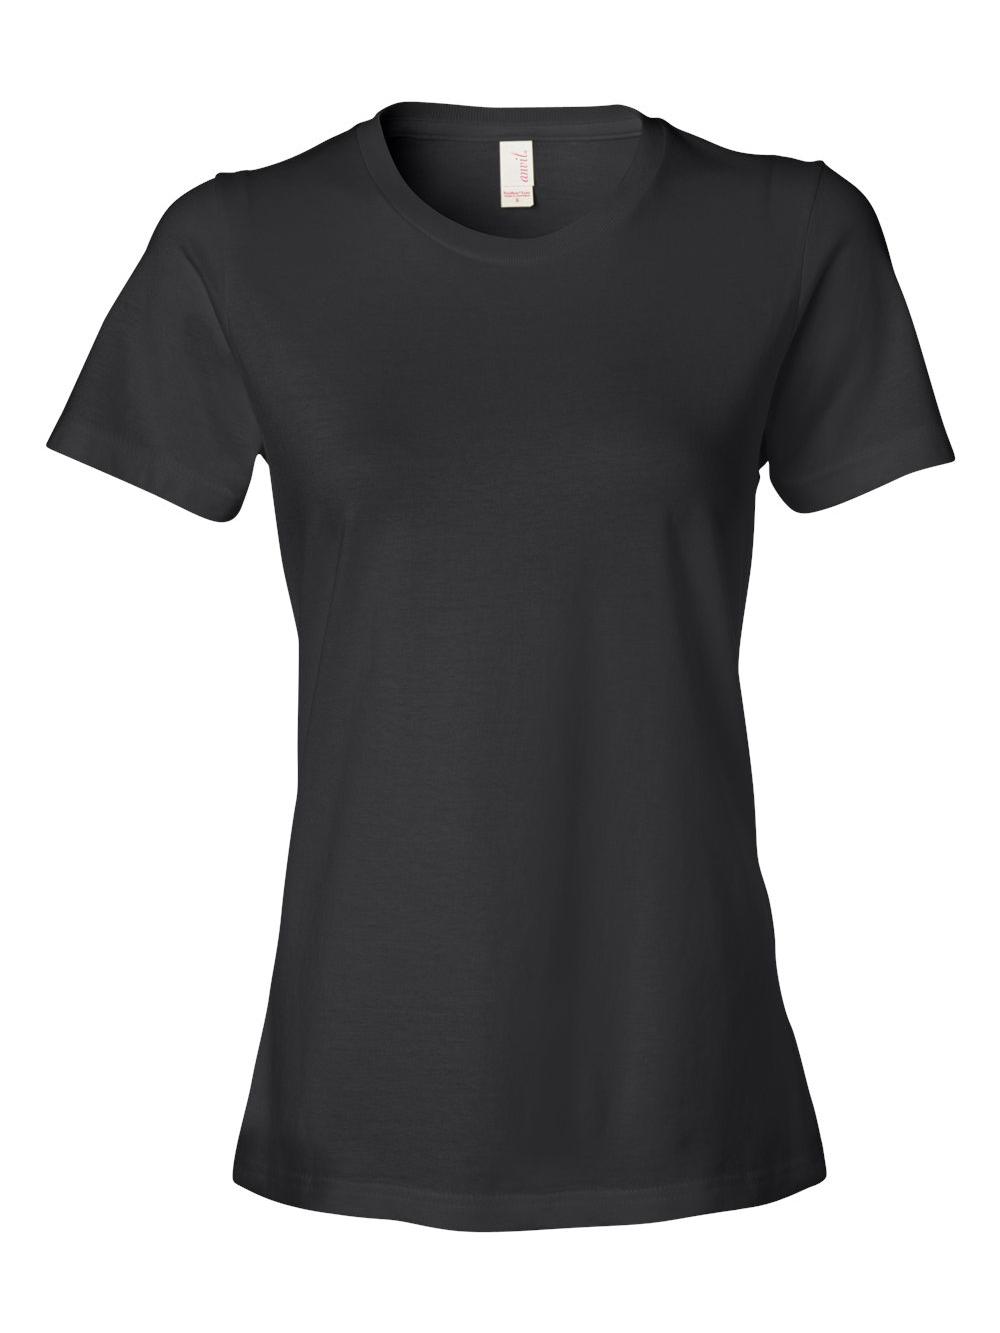 Anvil - Women's Lightweight Ringspun T-Shirt - 880